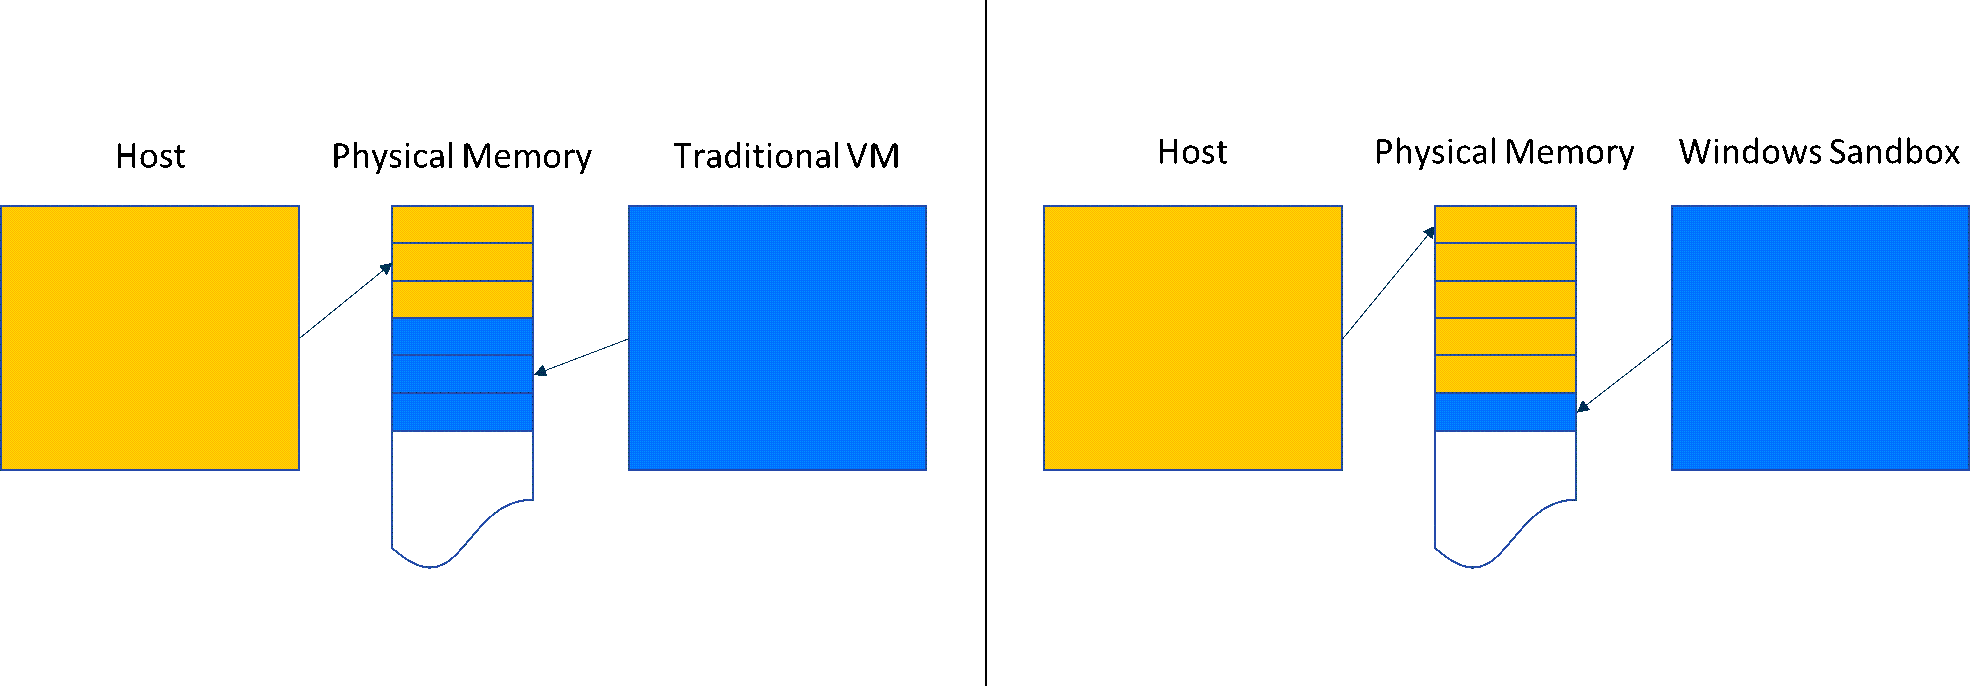 Um gráfico compara a partilha de memória no Sandbox do Windows em comparação com uma VM tradicional.